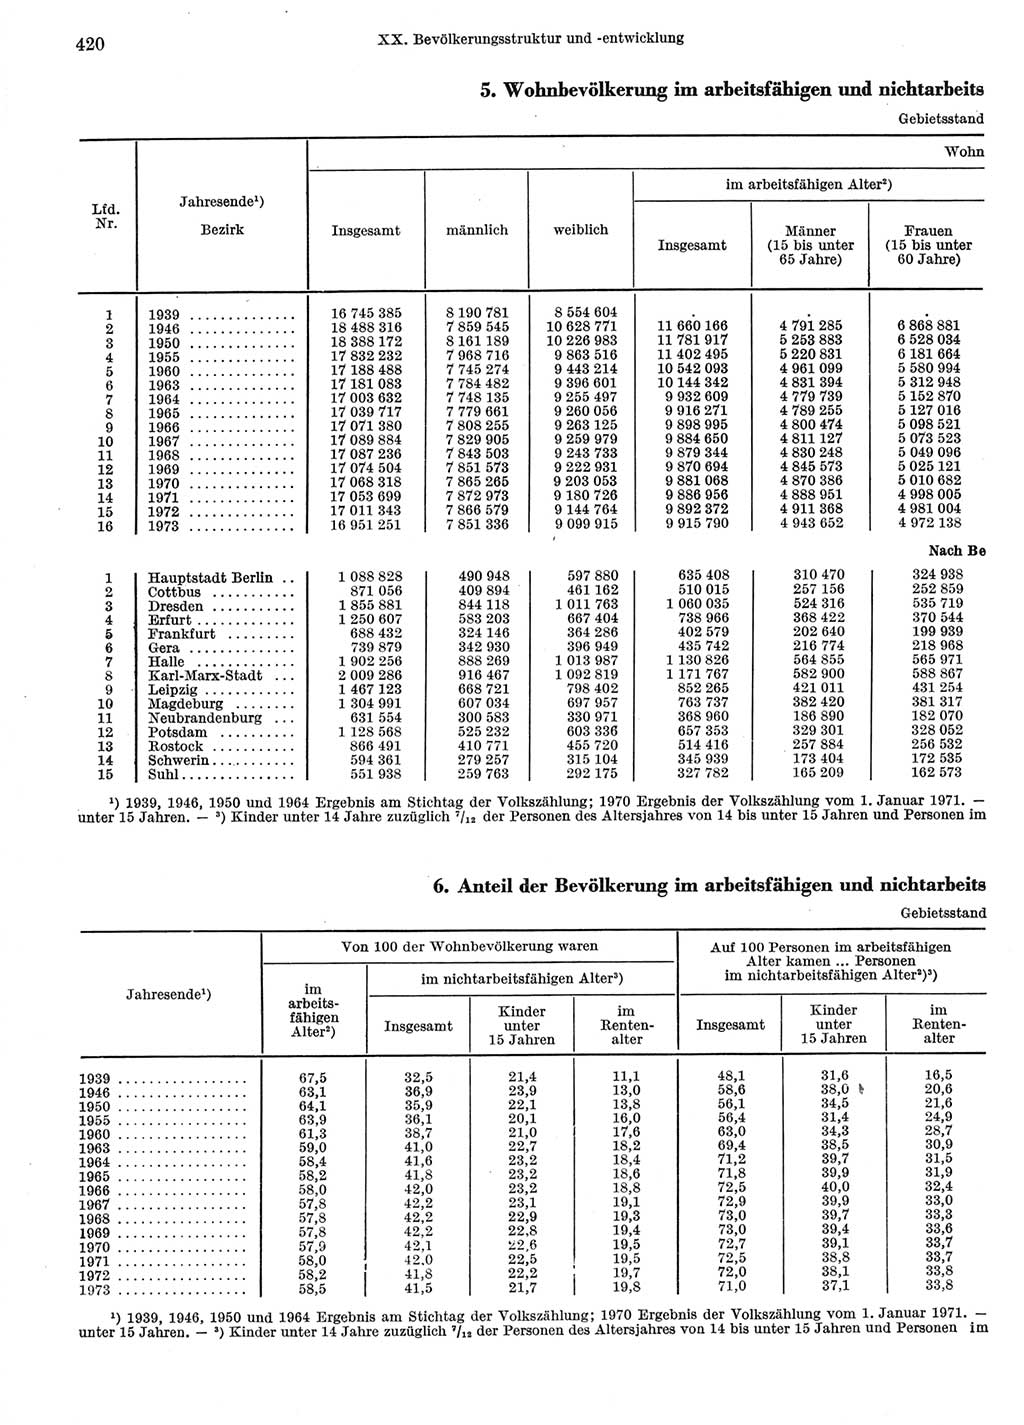 Statistisches Jahrbuch der Deutschen Demokratischen Republik (DDR) 1974, Seite 420 (Stat. Jb. DDR 1974, S. 420)